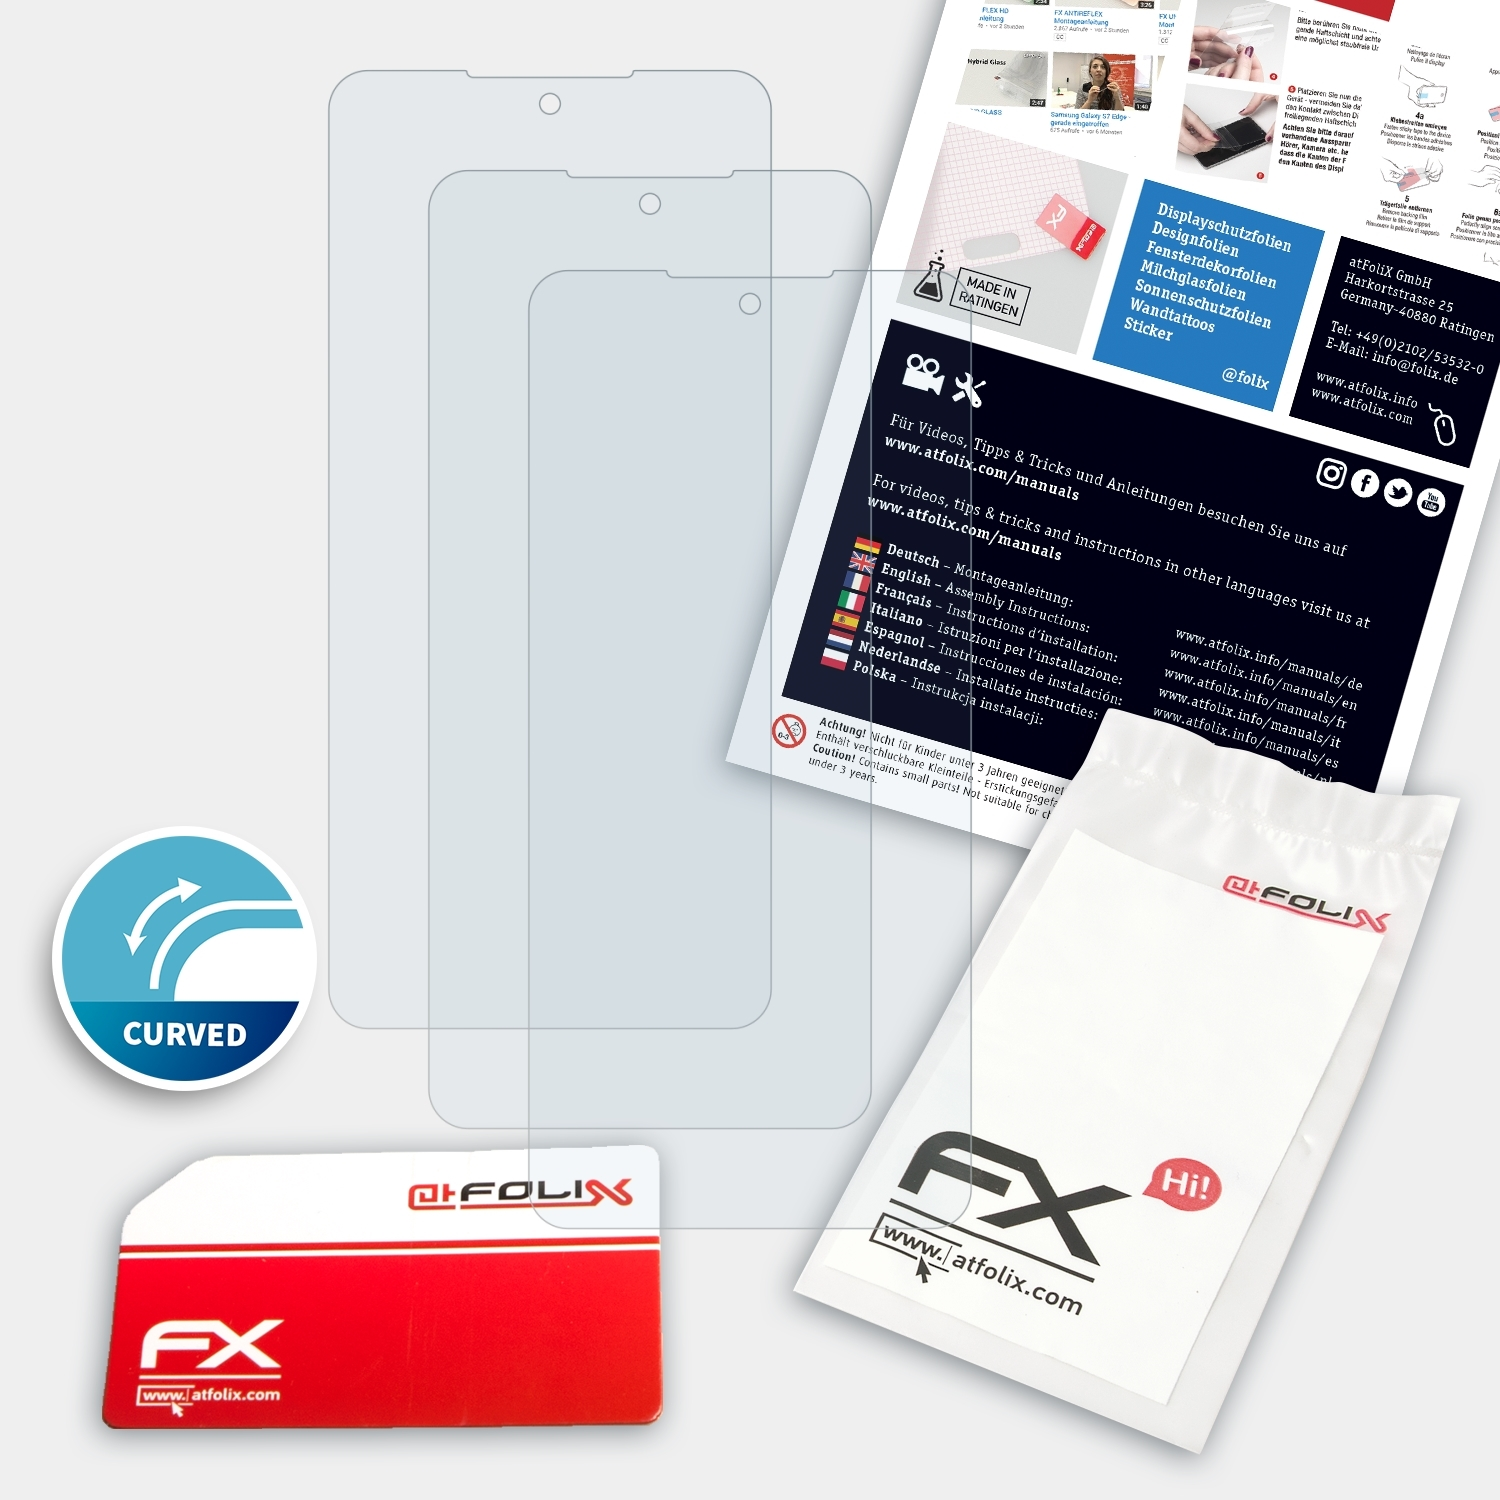 Redmi FX-ActiFleX Displayschutz(für 3x Xiaomi K40) ATFOLIX